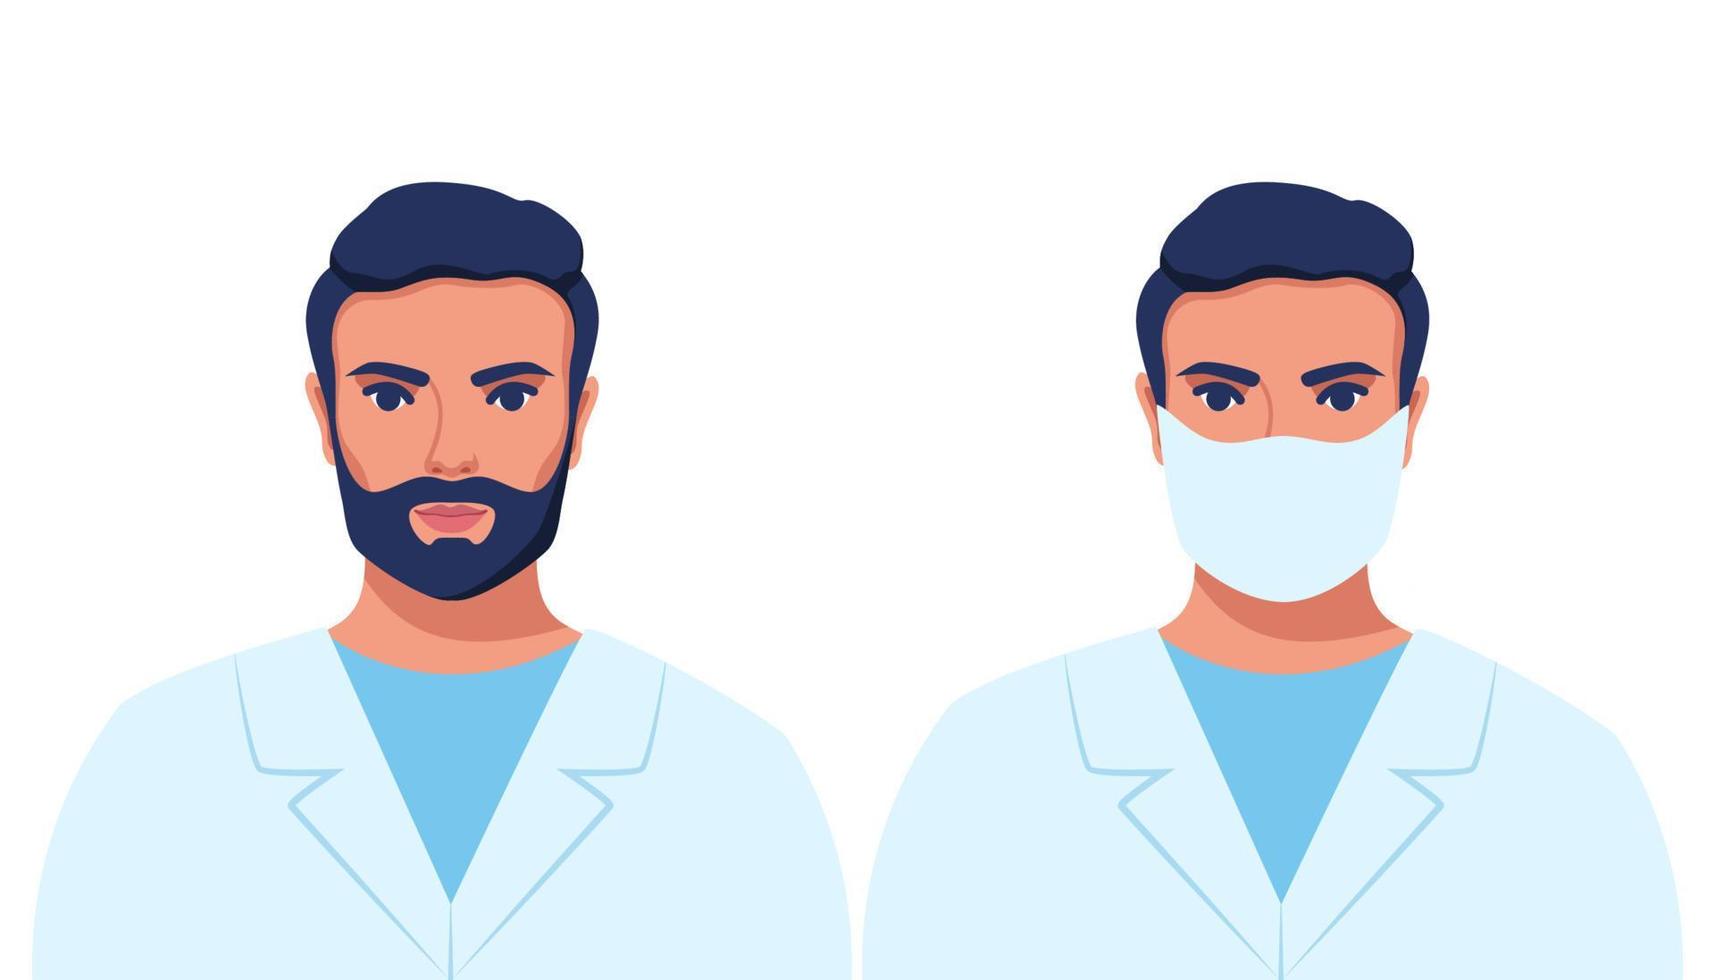 retrato de homem, médico ou enfermeira em roupão médico, que está usando máscara facial e sem máscara facial. ilustração vetorial. vetor